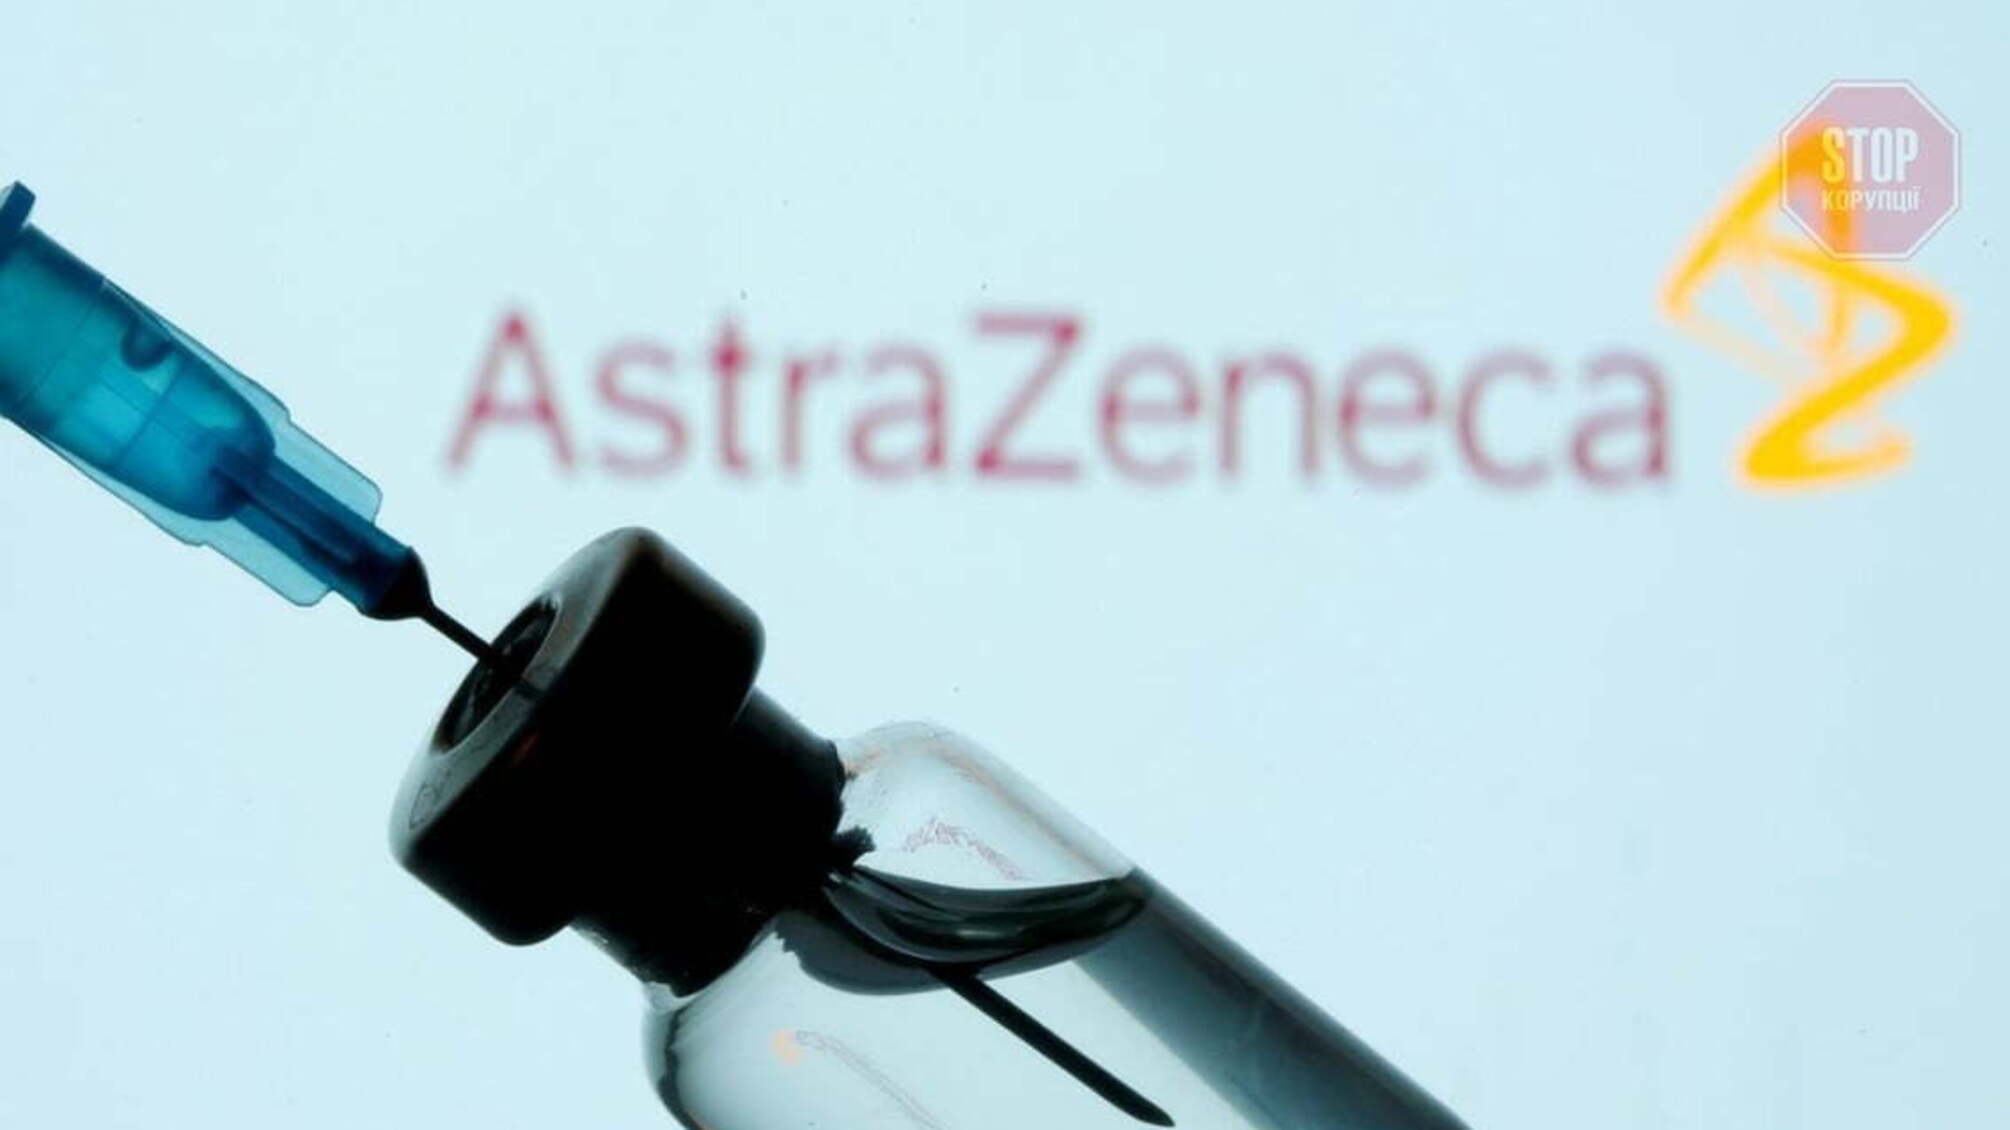 В Австралии умерла женщина после вакцины «AstraZeneca»